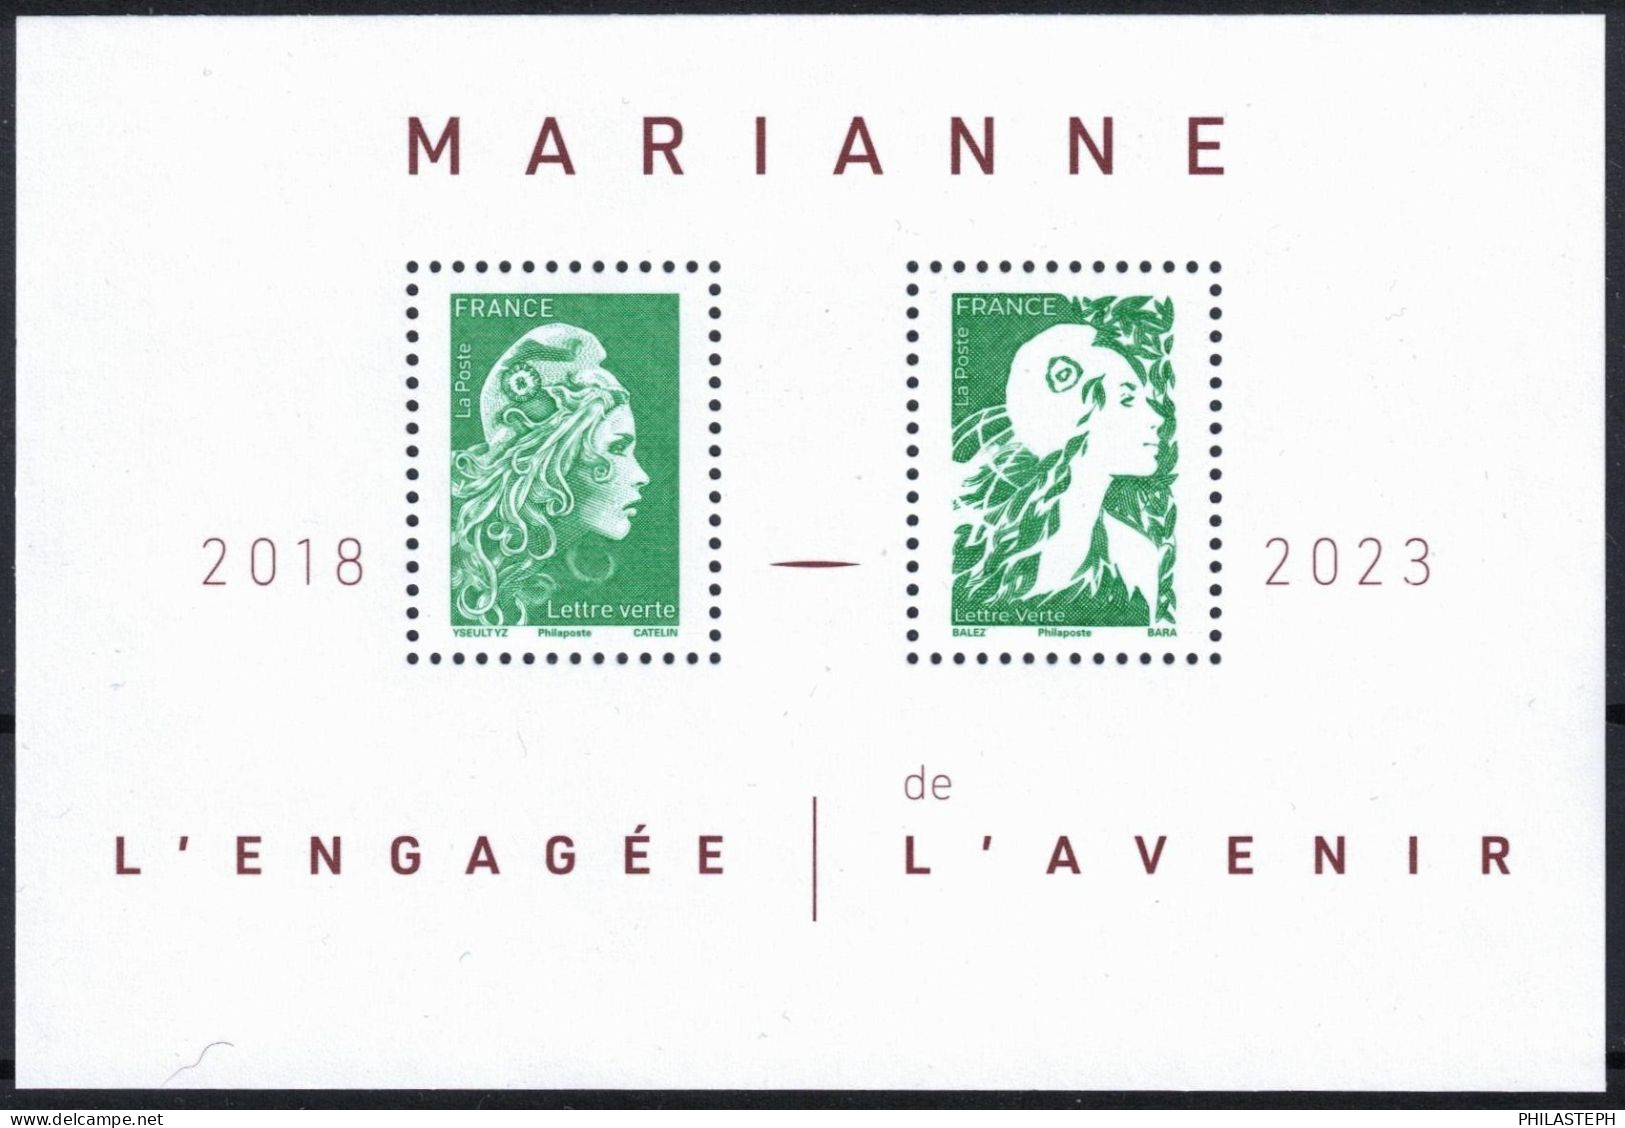 FRANCE 2024 -  Bloc Feuillet  LETTRE VERTE - MARIANNE L'ENGAGEE 2018 / MARIANNE DE L'AVENIR 2023 - BLOC YT 158 Neuf ** - Neufs